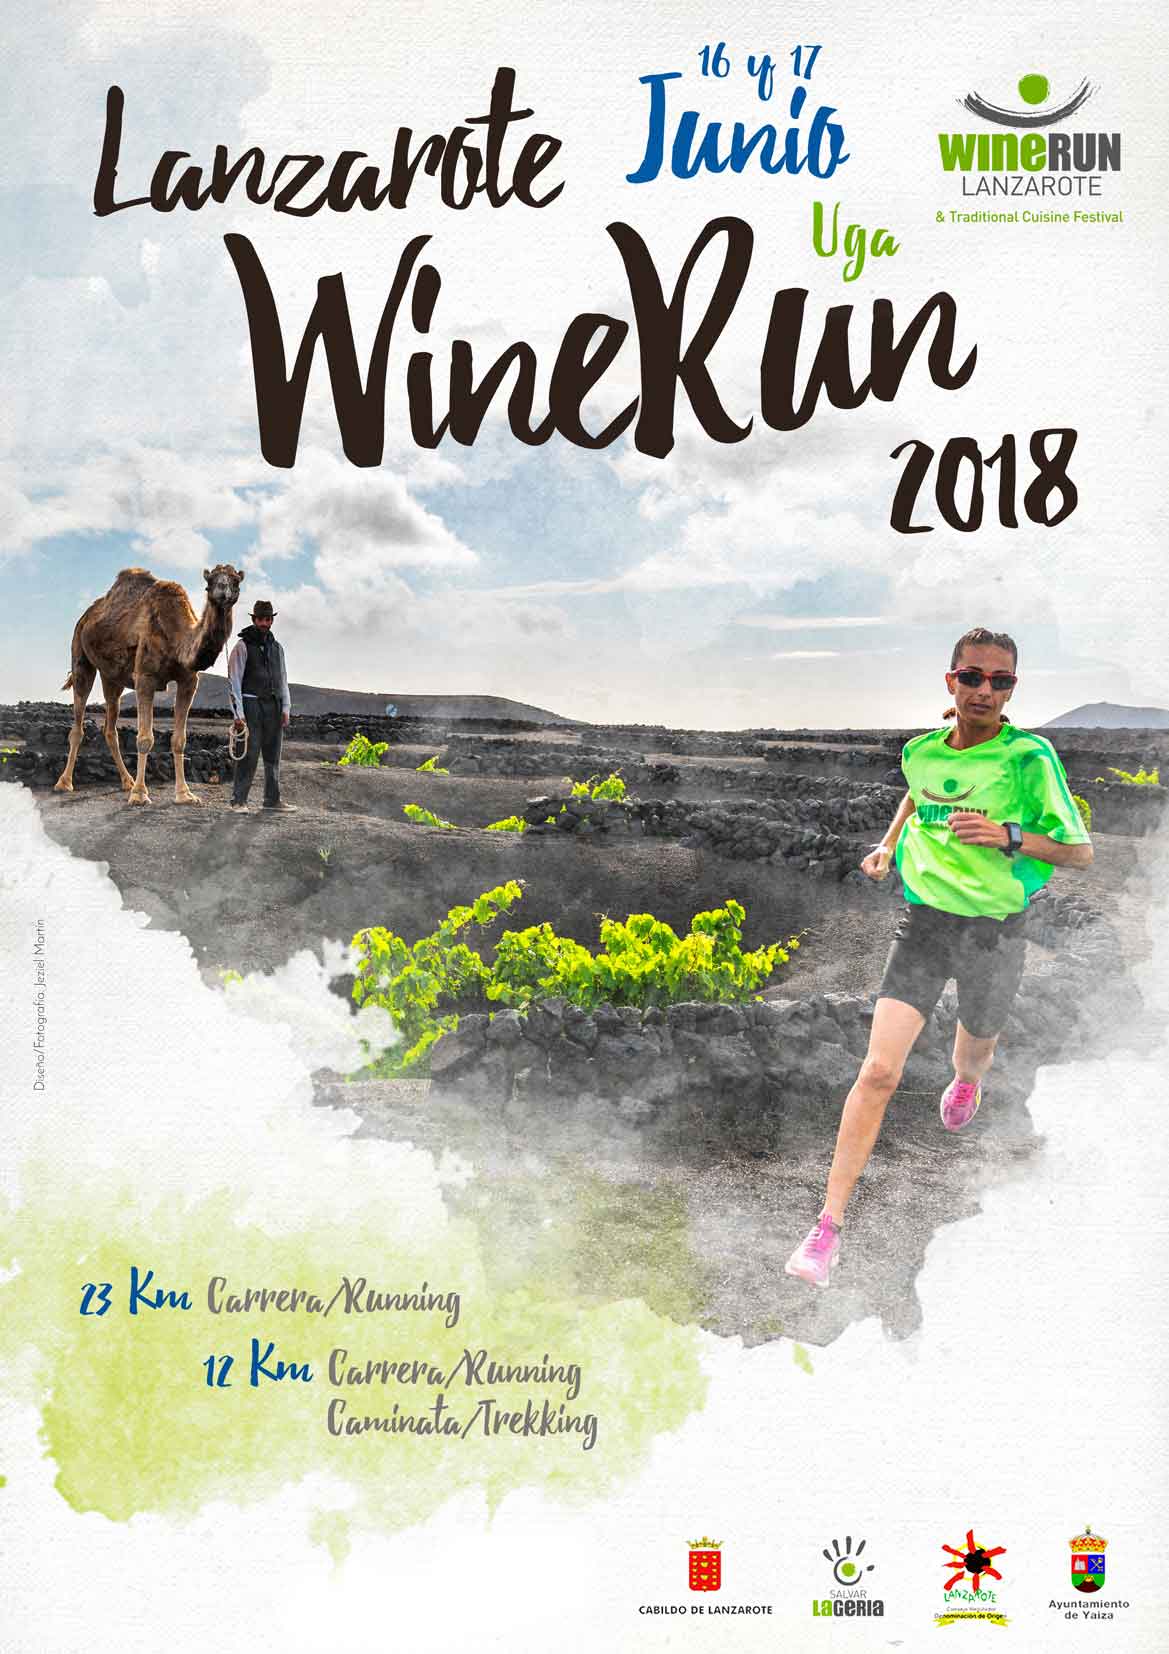 abierto el plazo de inscripción Lanzarote Wine Run 2018